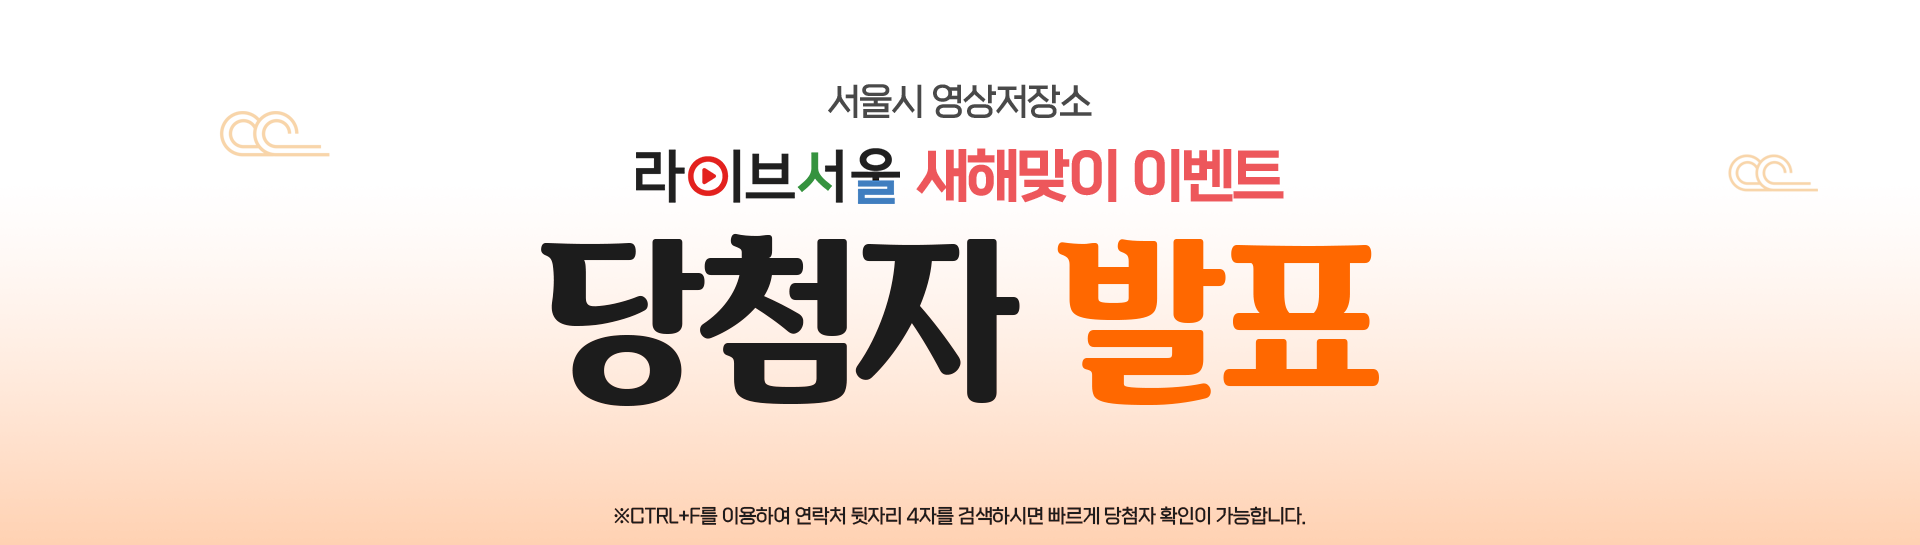 서울시 영상저장소 라이브서울 새해맞이 이벤트 당첨자 발표